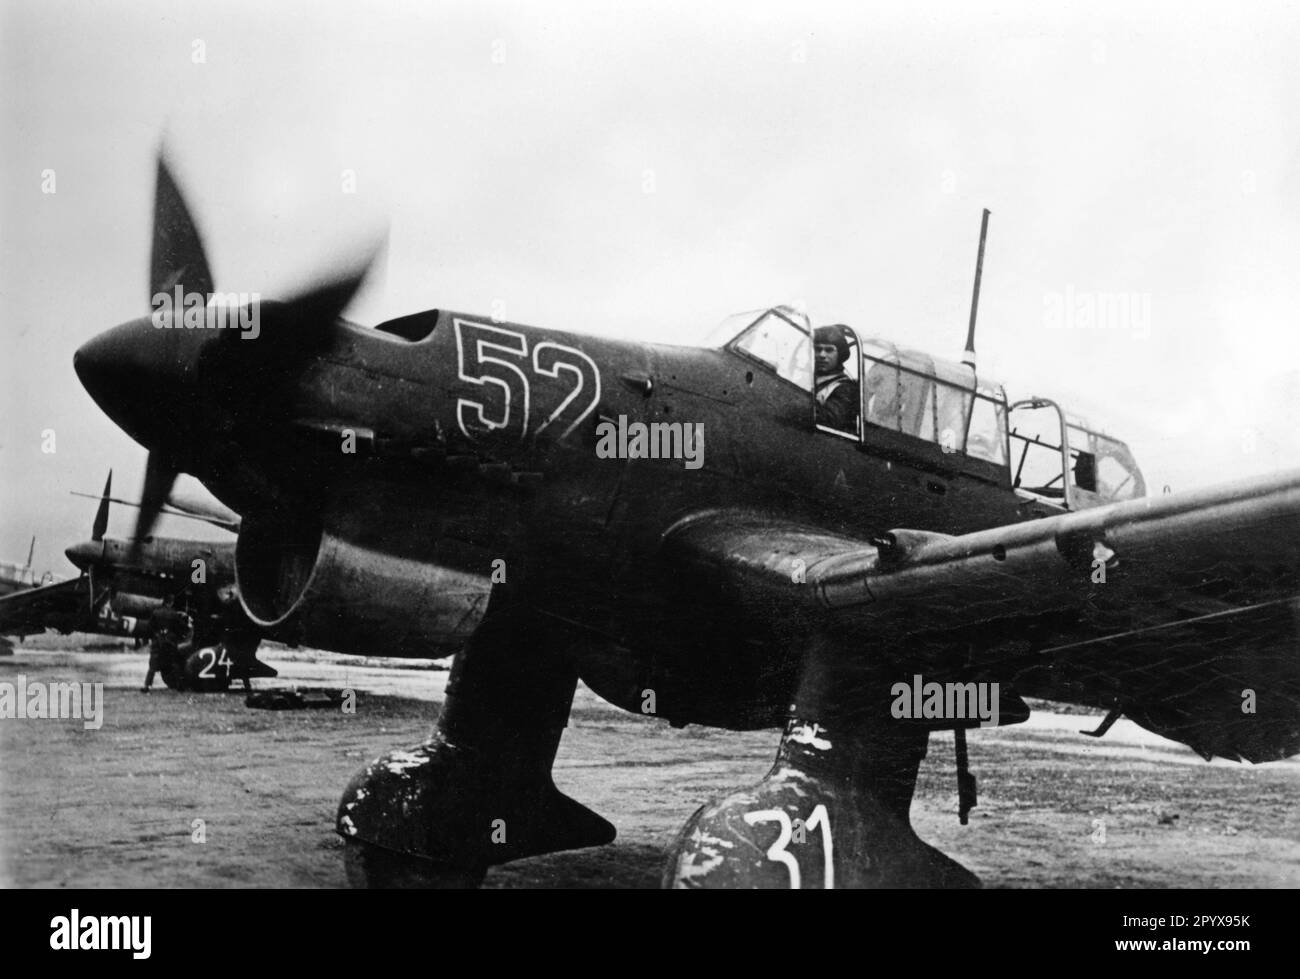 Junkers Ju 87 von der Deutschen Luftwaffe, bevor sie zu einer Mission gegen Britisches Malta abheben. Foto: Wiesner. [Maschinelle Übersetzung] Stockfoto